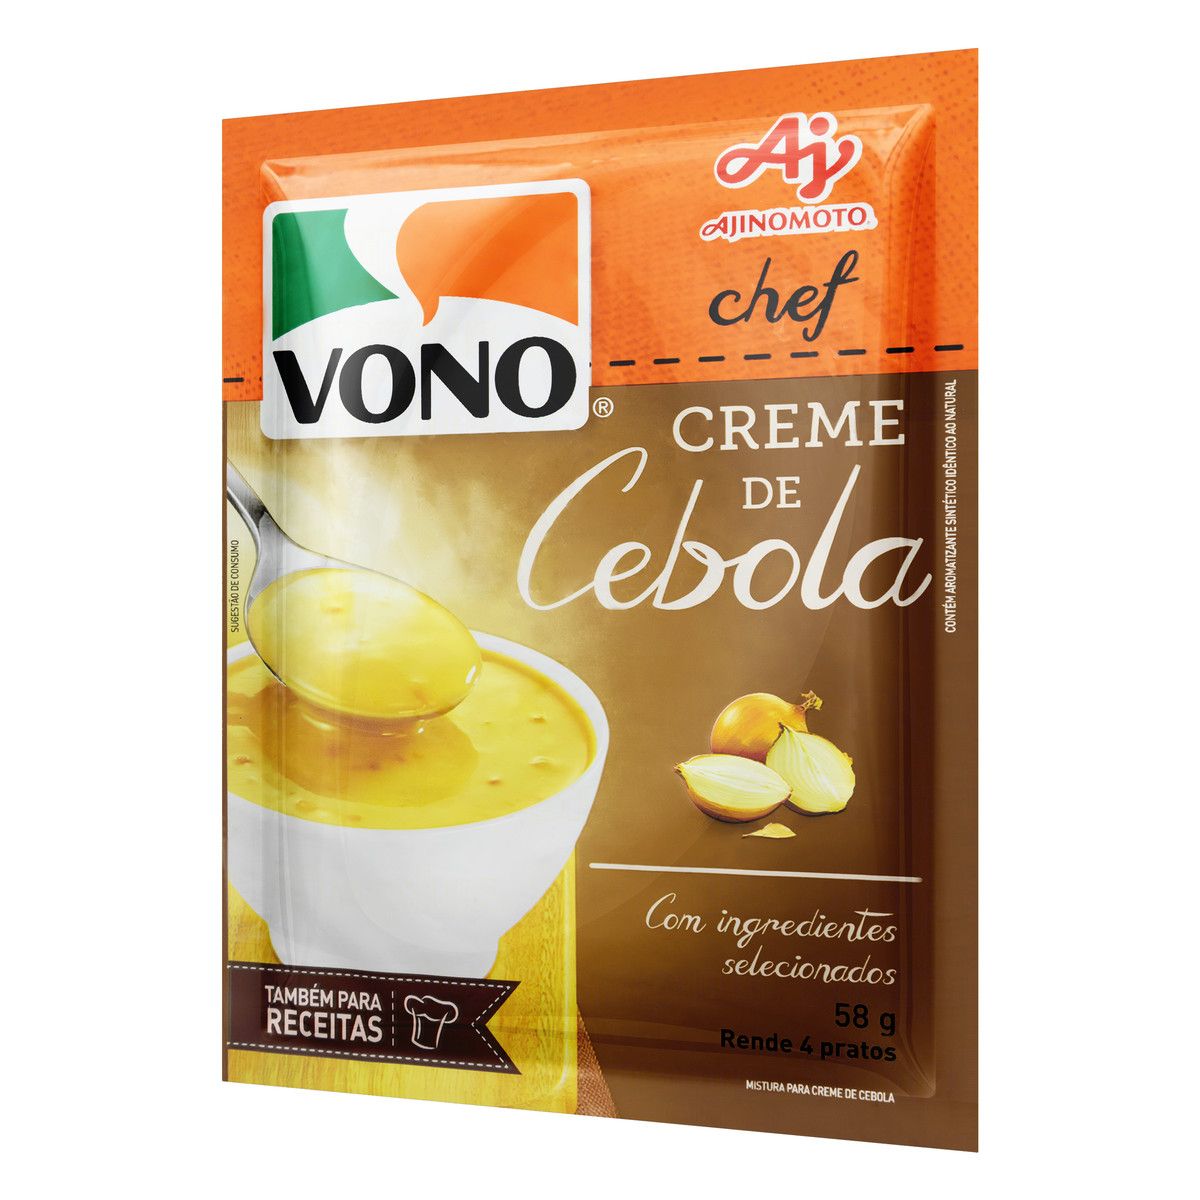 Creme Cebola Vono Chef Pacote 58g image number 2